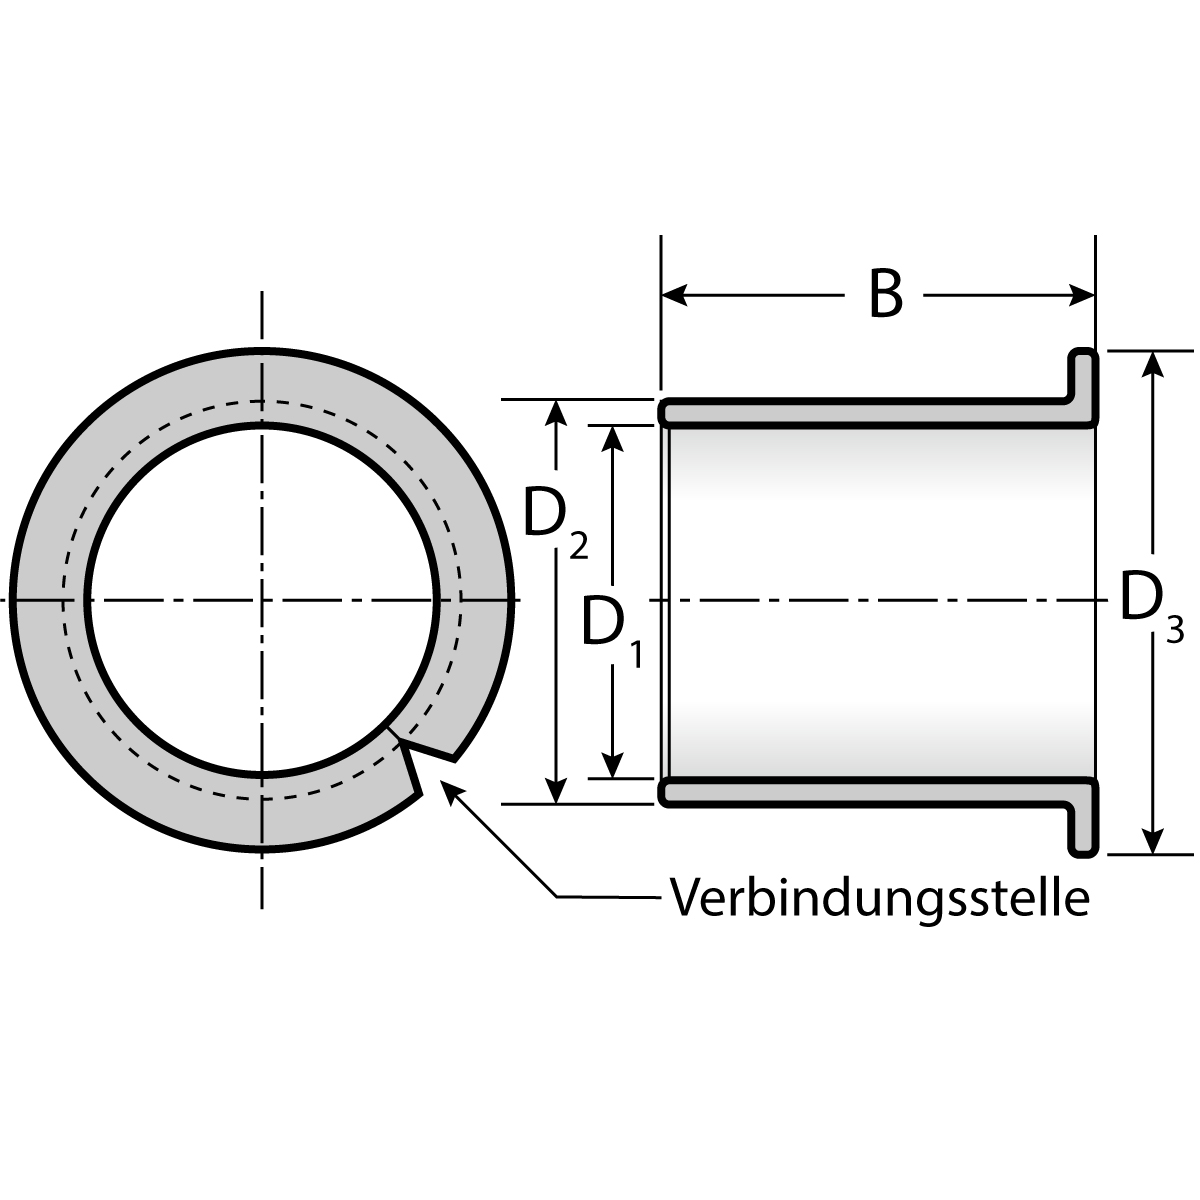 Gleitlager 0604 6 x 8/12 x 4 mm wartungsfrei, mit Bund